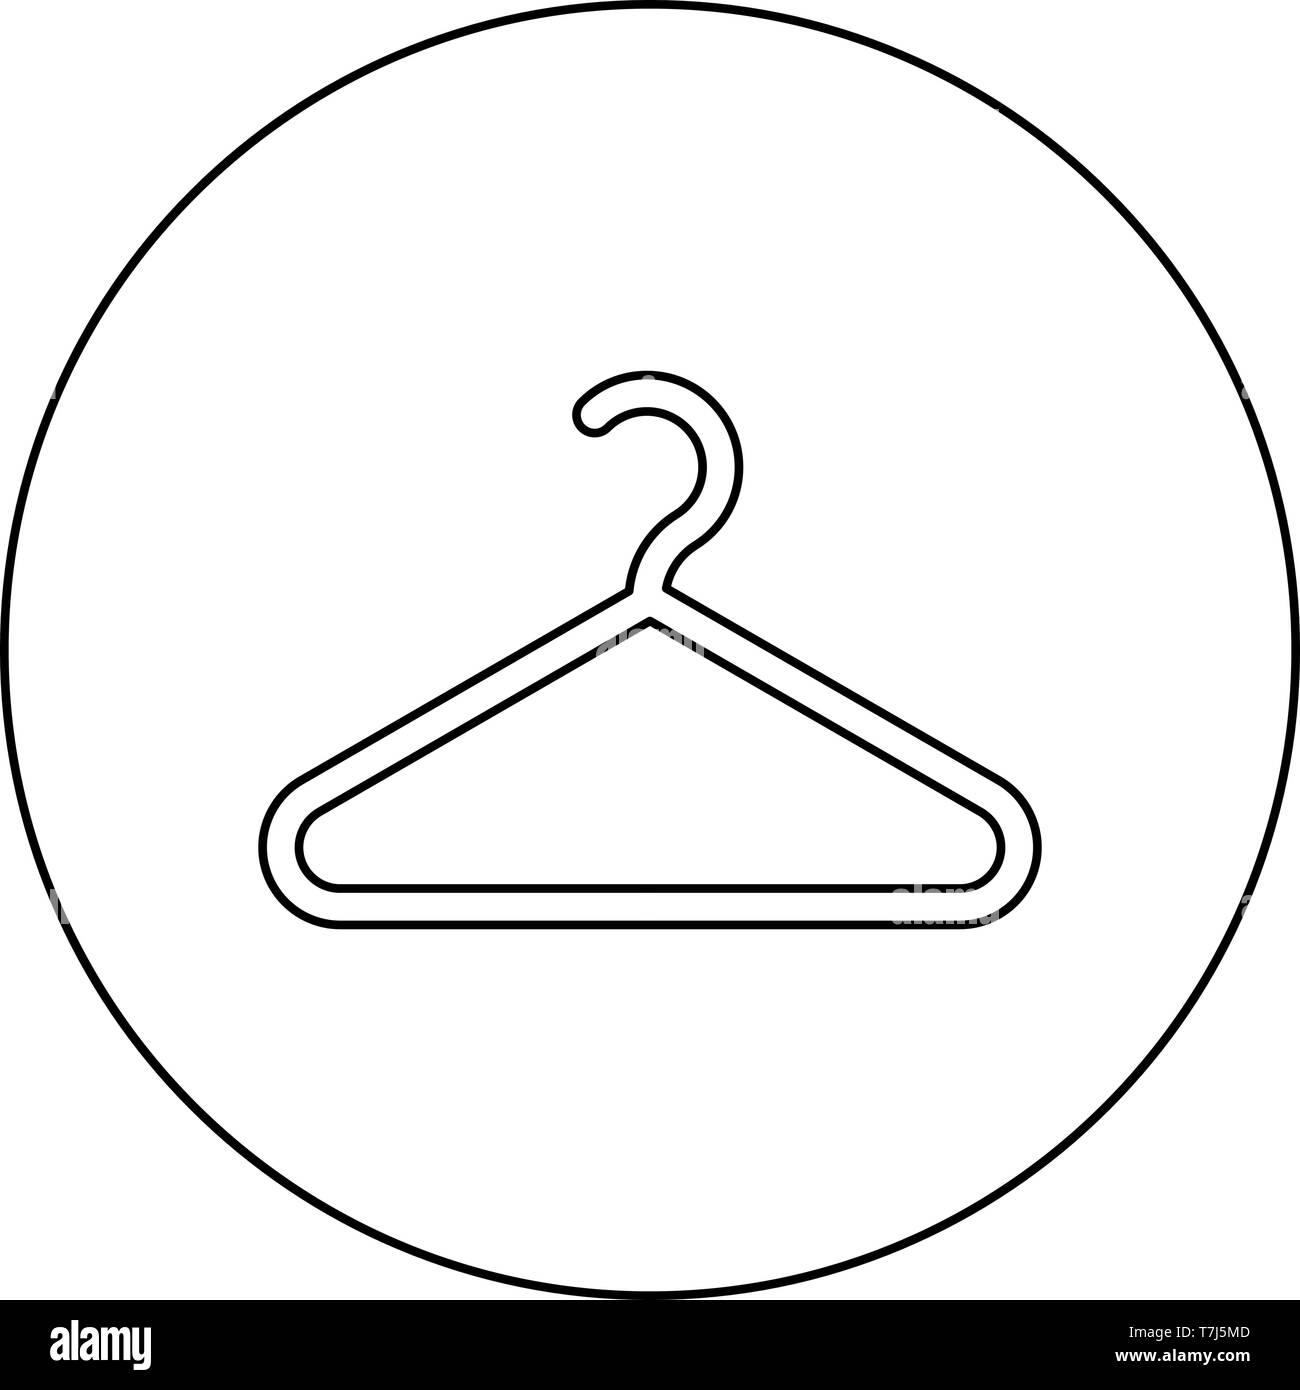 Gruccia appendiabiti icona nel cerchio sagoma tonda colore nero  illustrazione vettoriale stile piatto semplice immagine Immagine e  Vettoriale - Alamy